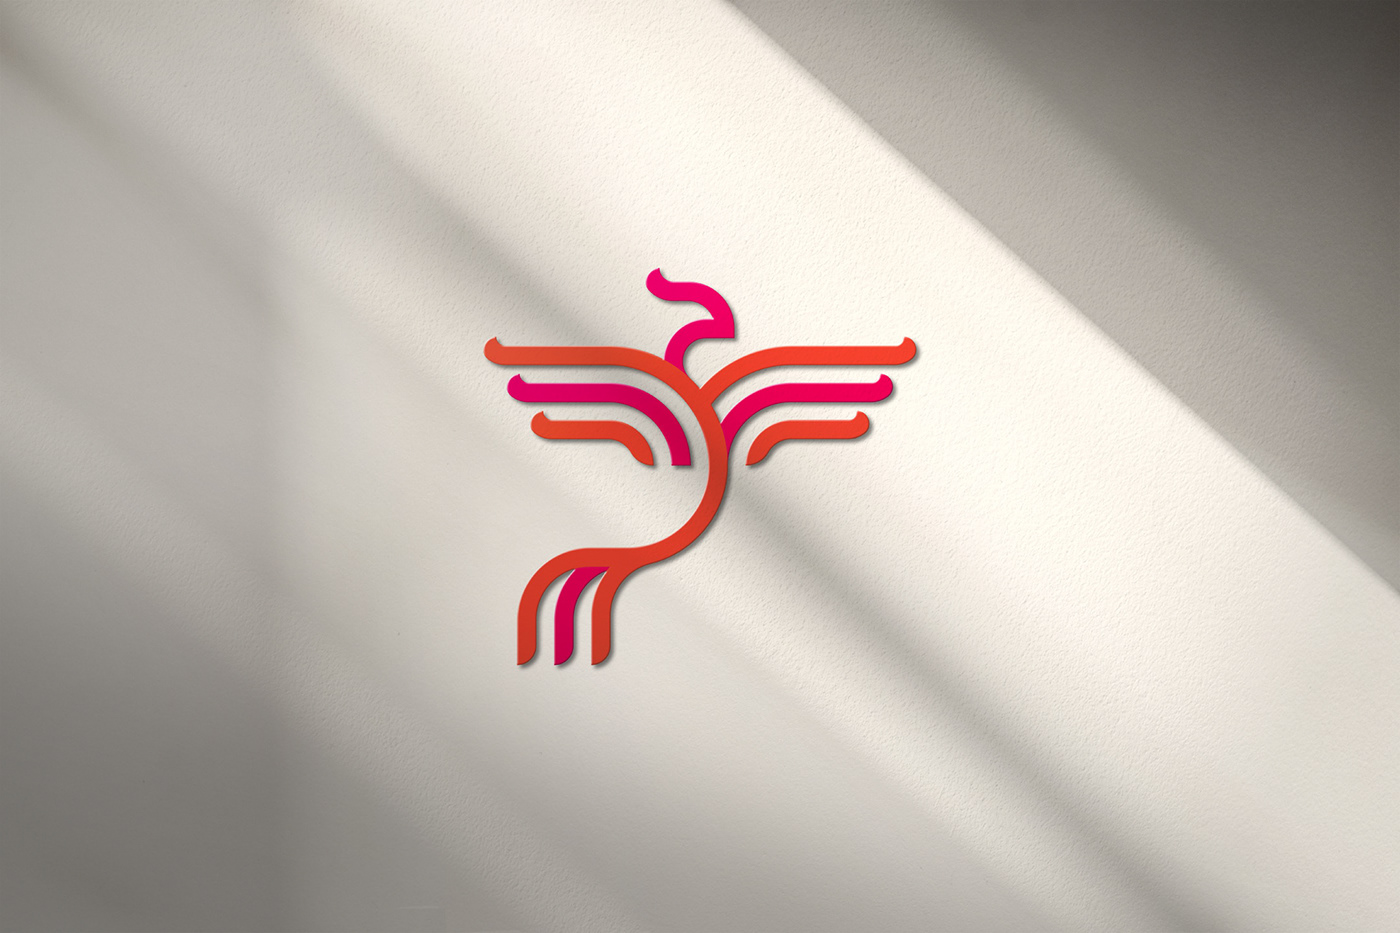 Artidoto artídotoestudio Cantabria fenix Phoenix Education logo branding  identity patriciagarcia